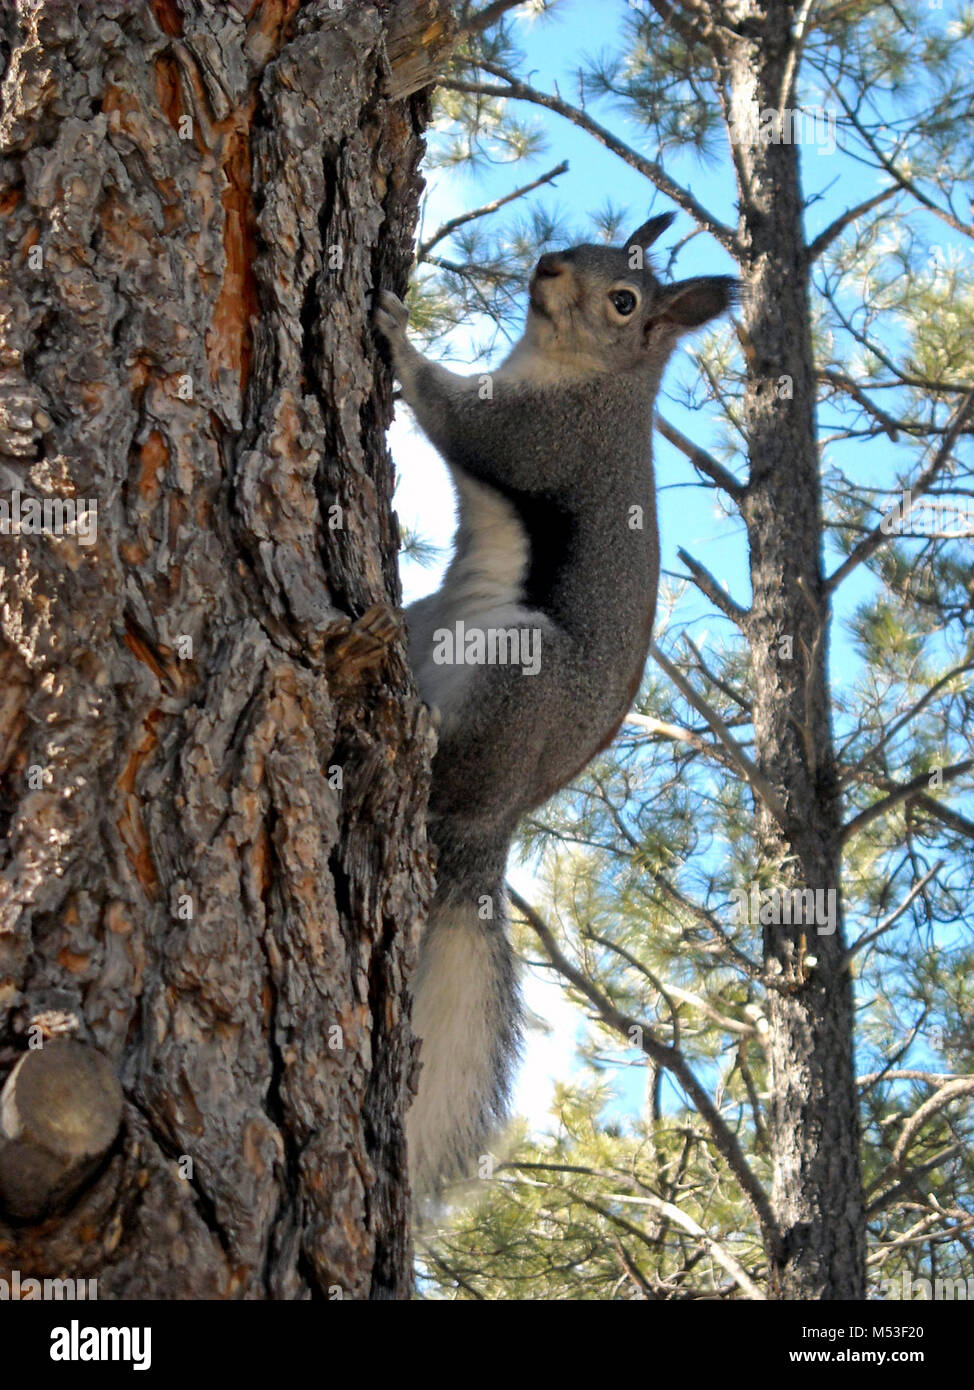 Grand Canyon National Park South Rim-Abert die Eichhörnchen. Abert die Eichhörnchen sind einzigartige Säugetiere am South Rim des Grand Canyon National Park, wo es gibt genug Ponderosa Kiefern ihre ernährungsphysiologischen Bedürfnisse zu liefern. Durch ihren dunklen grauen Rücken mit einer rot-braunen Flecken, weiße Bäuche identifiziert, und lange flauschigen weißen Schwänze Die meisten destinctive Funktion von abert die Eichhörnchen sind ihre großen getuftete Ohren. Eichhörnchen Abert der Feed auf die Kegel, Knospen und Zweige der Ponderosa Pinien sowie Pilz und Baum sap. Mit offensichtlich keine Höhenangst, können sie oft hoch in den Bäumen von HASTEN gesehen werden. Stockfoto